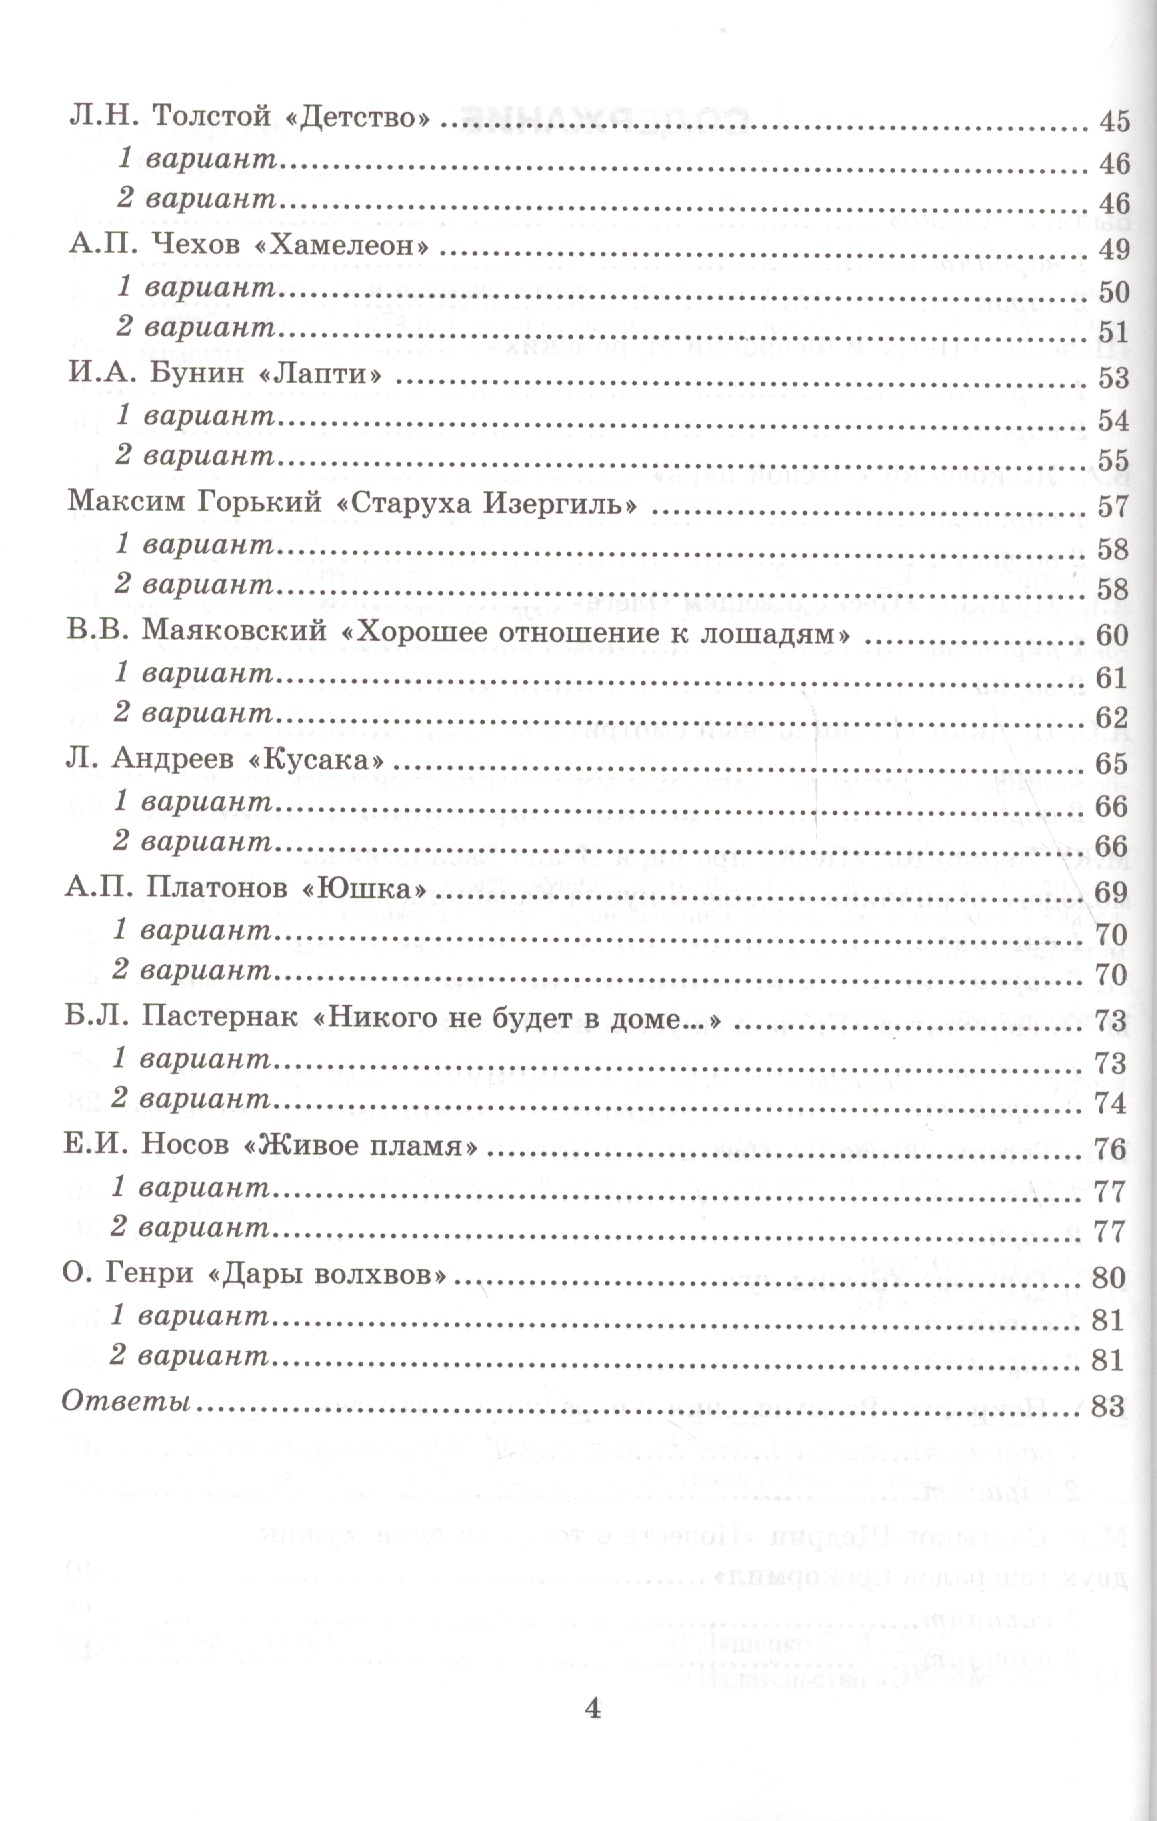 Тесты по русской литературе в 7 классе